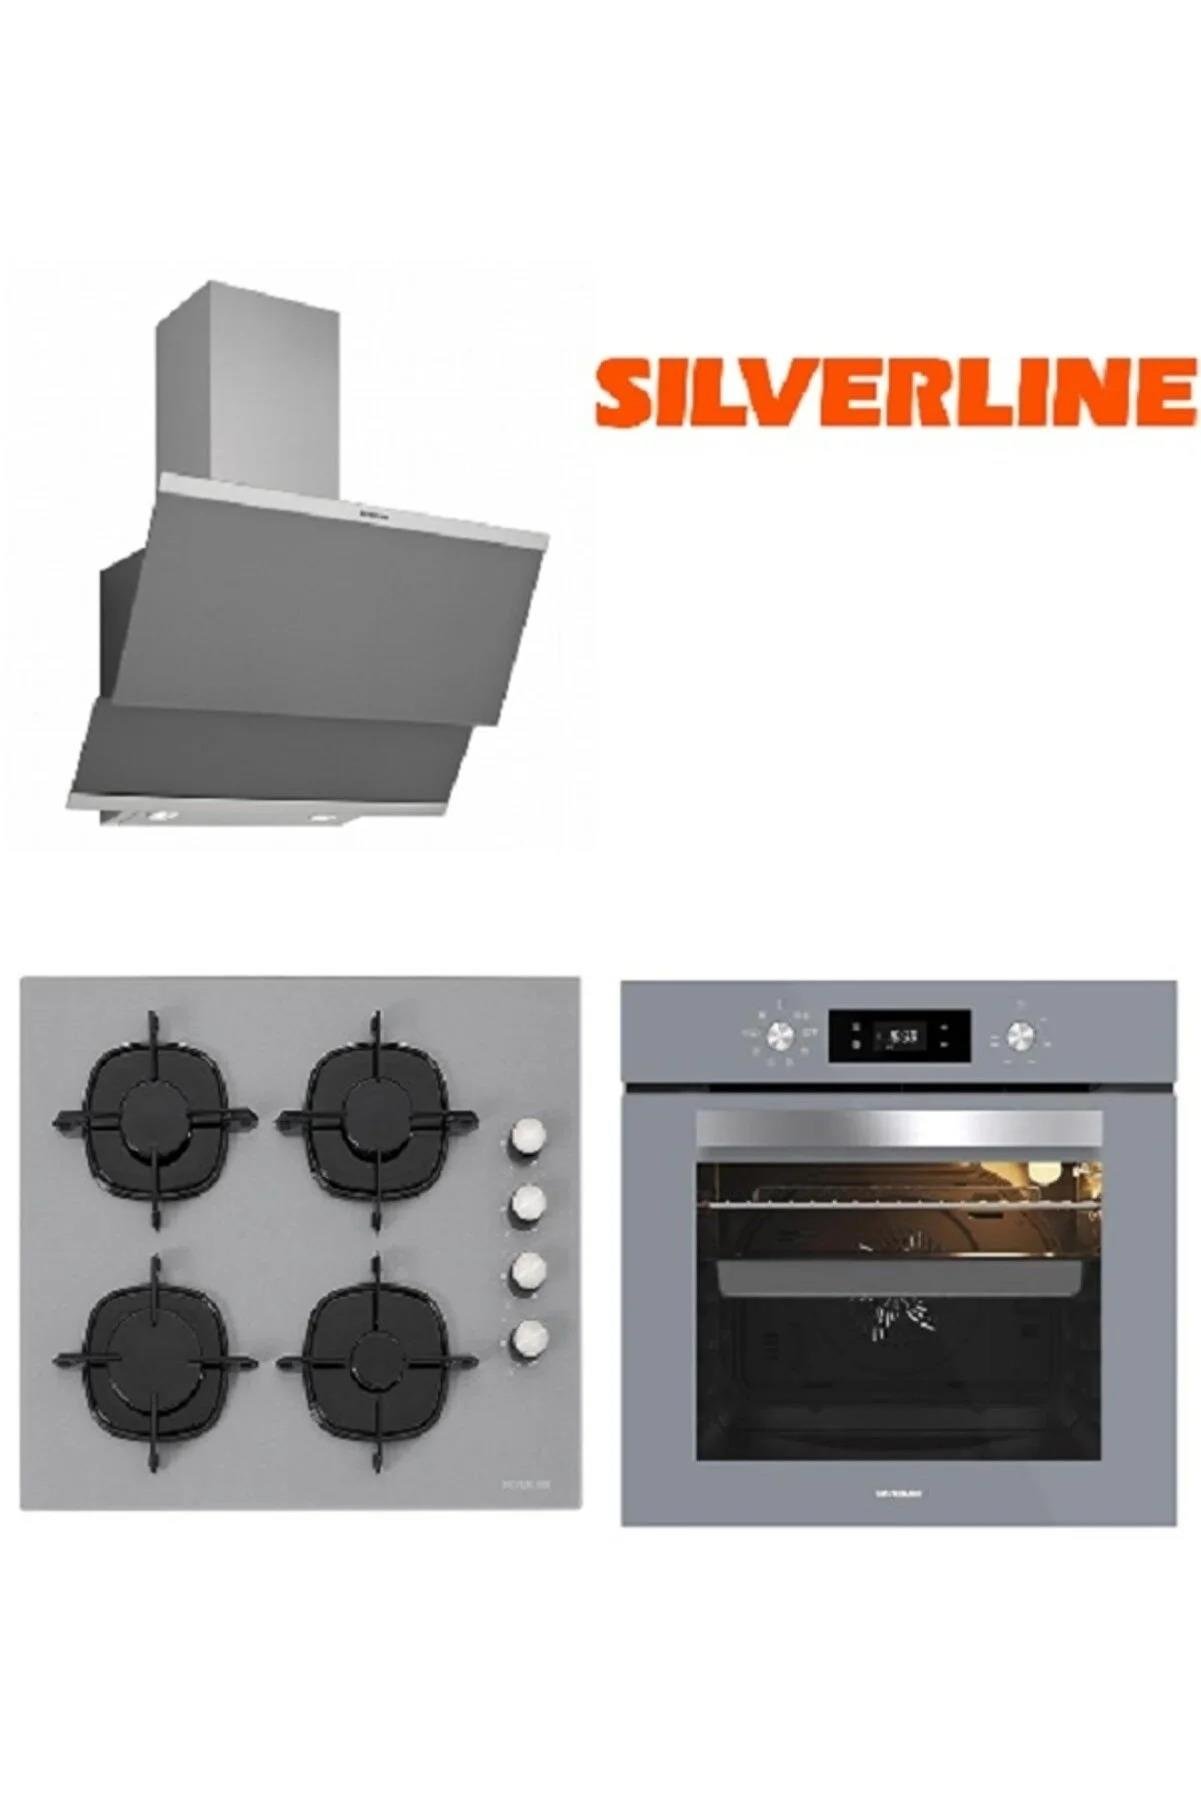 Silverline Gri Cam Ankastre Set 3420 - CS5335S01 - BO65E4S01